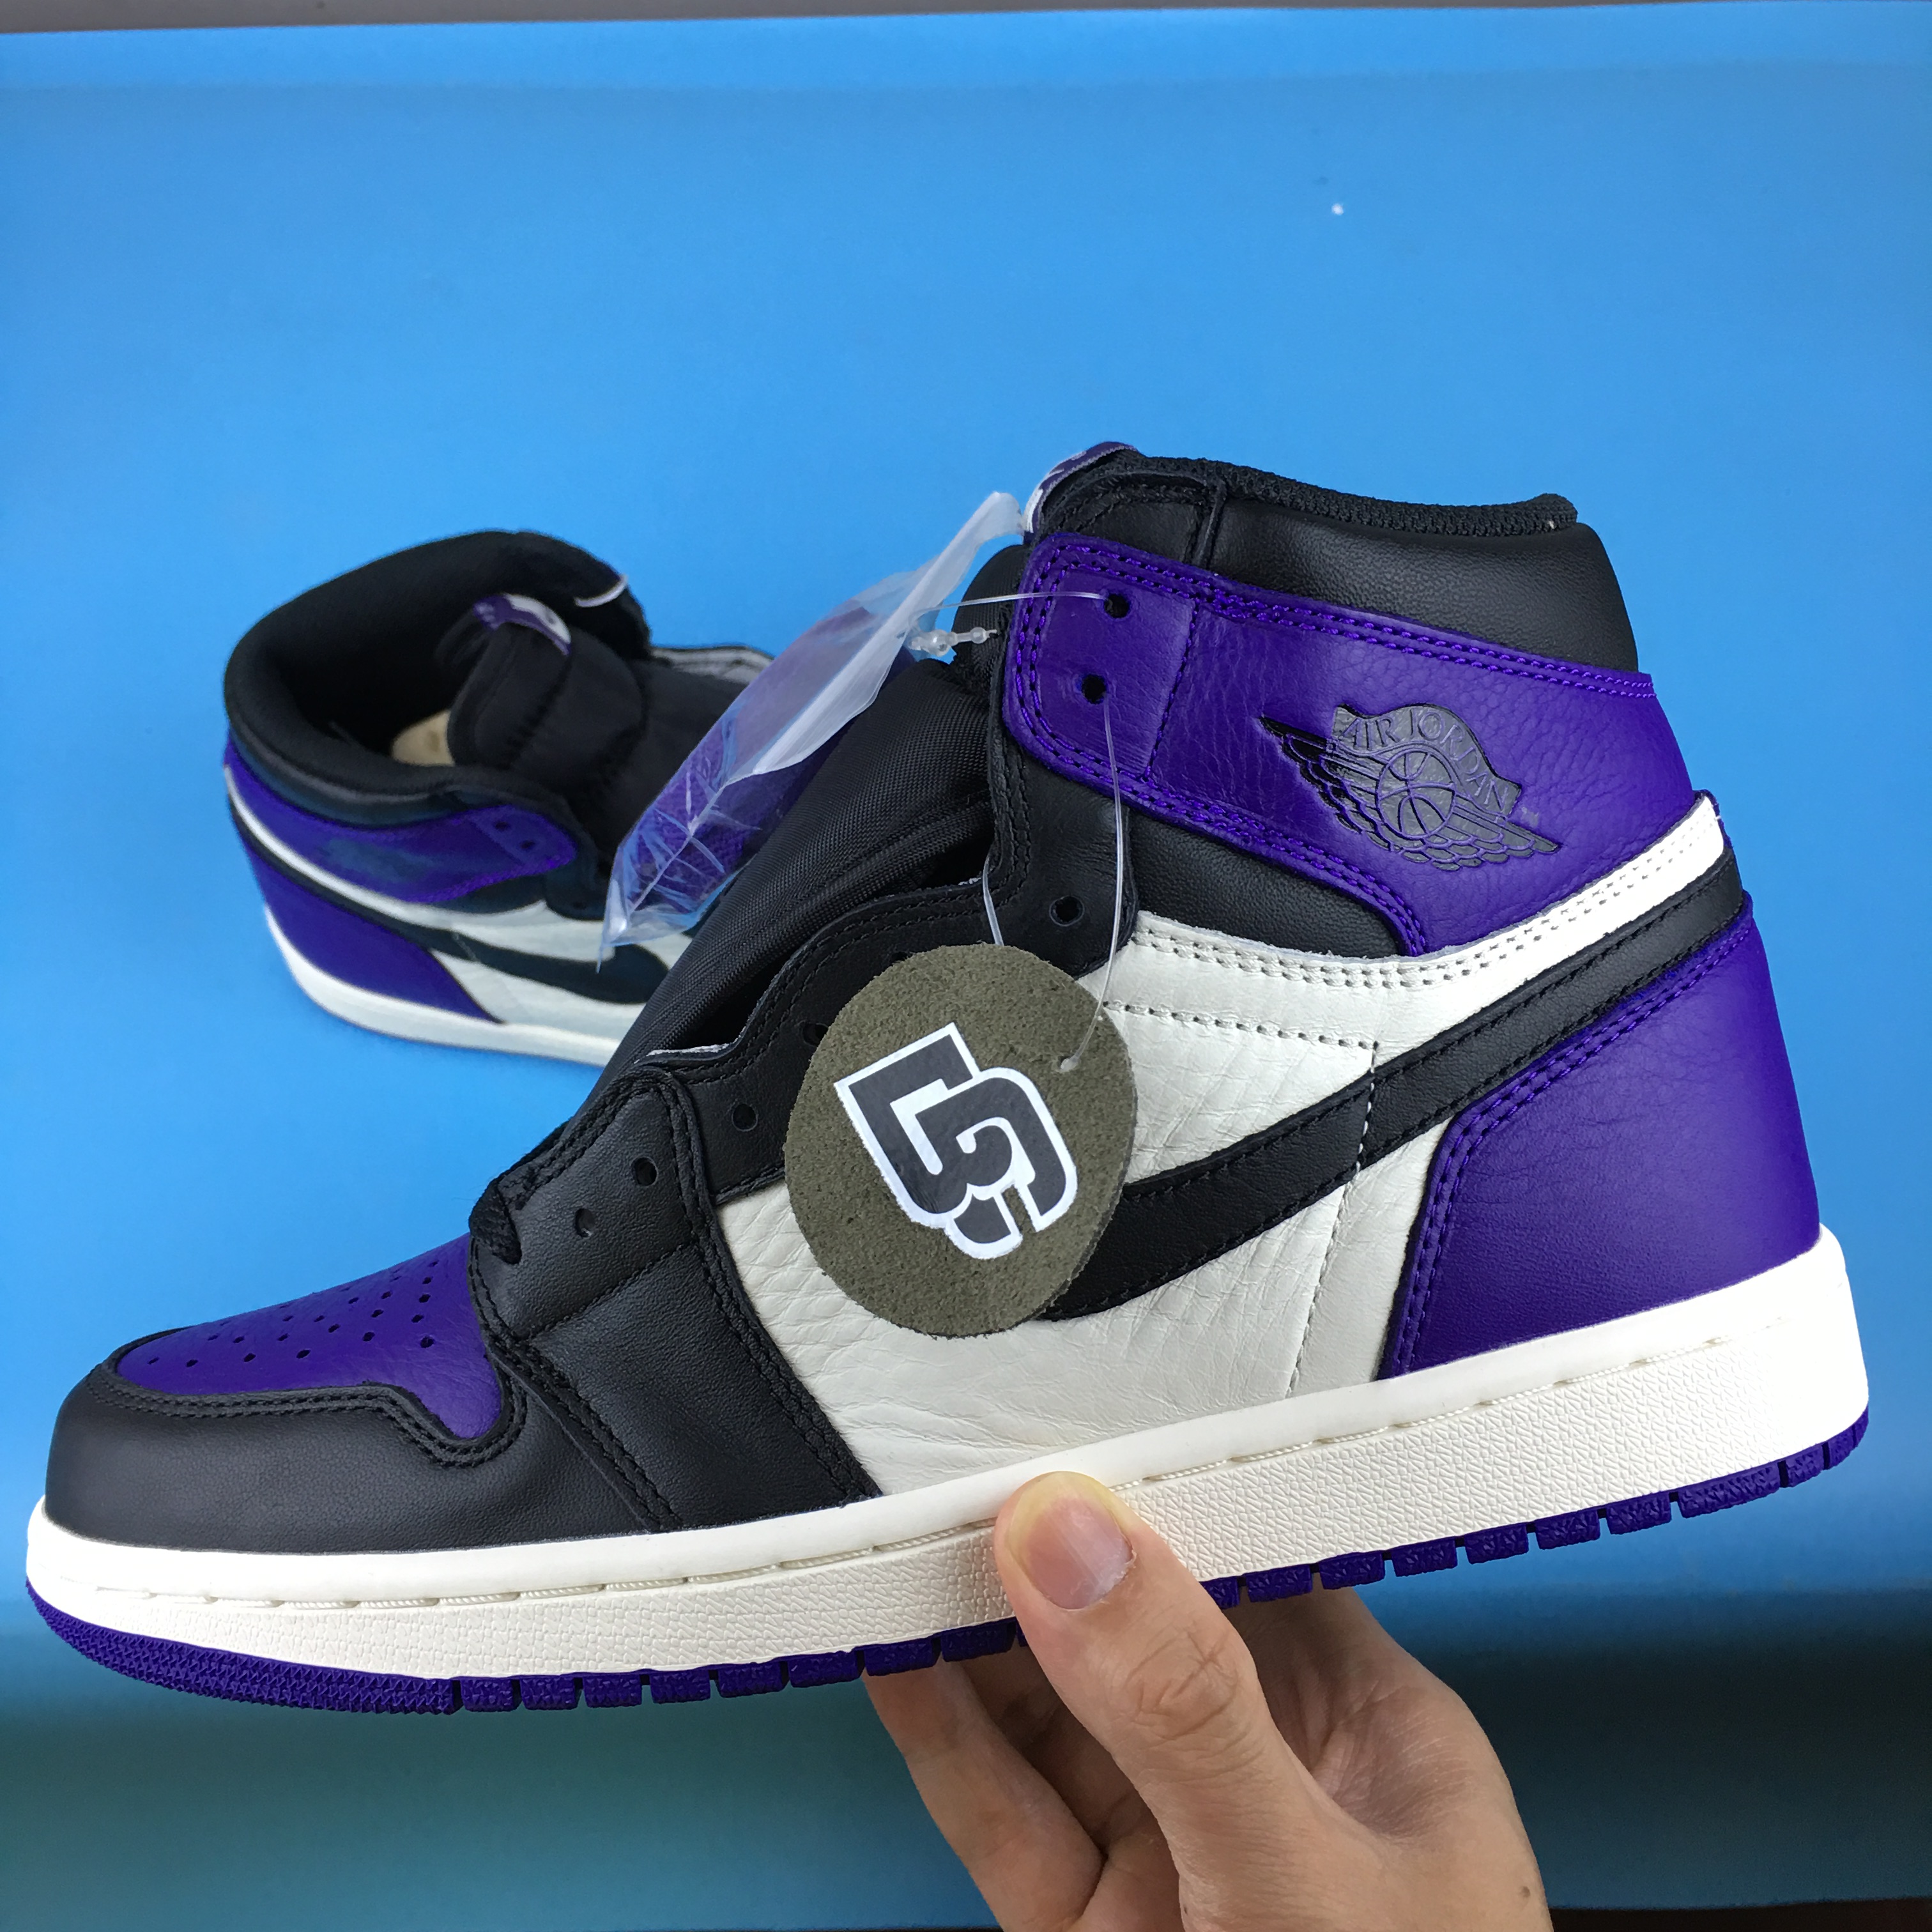 New Air Jordan 1 Court Purple Shoes